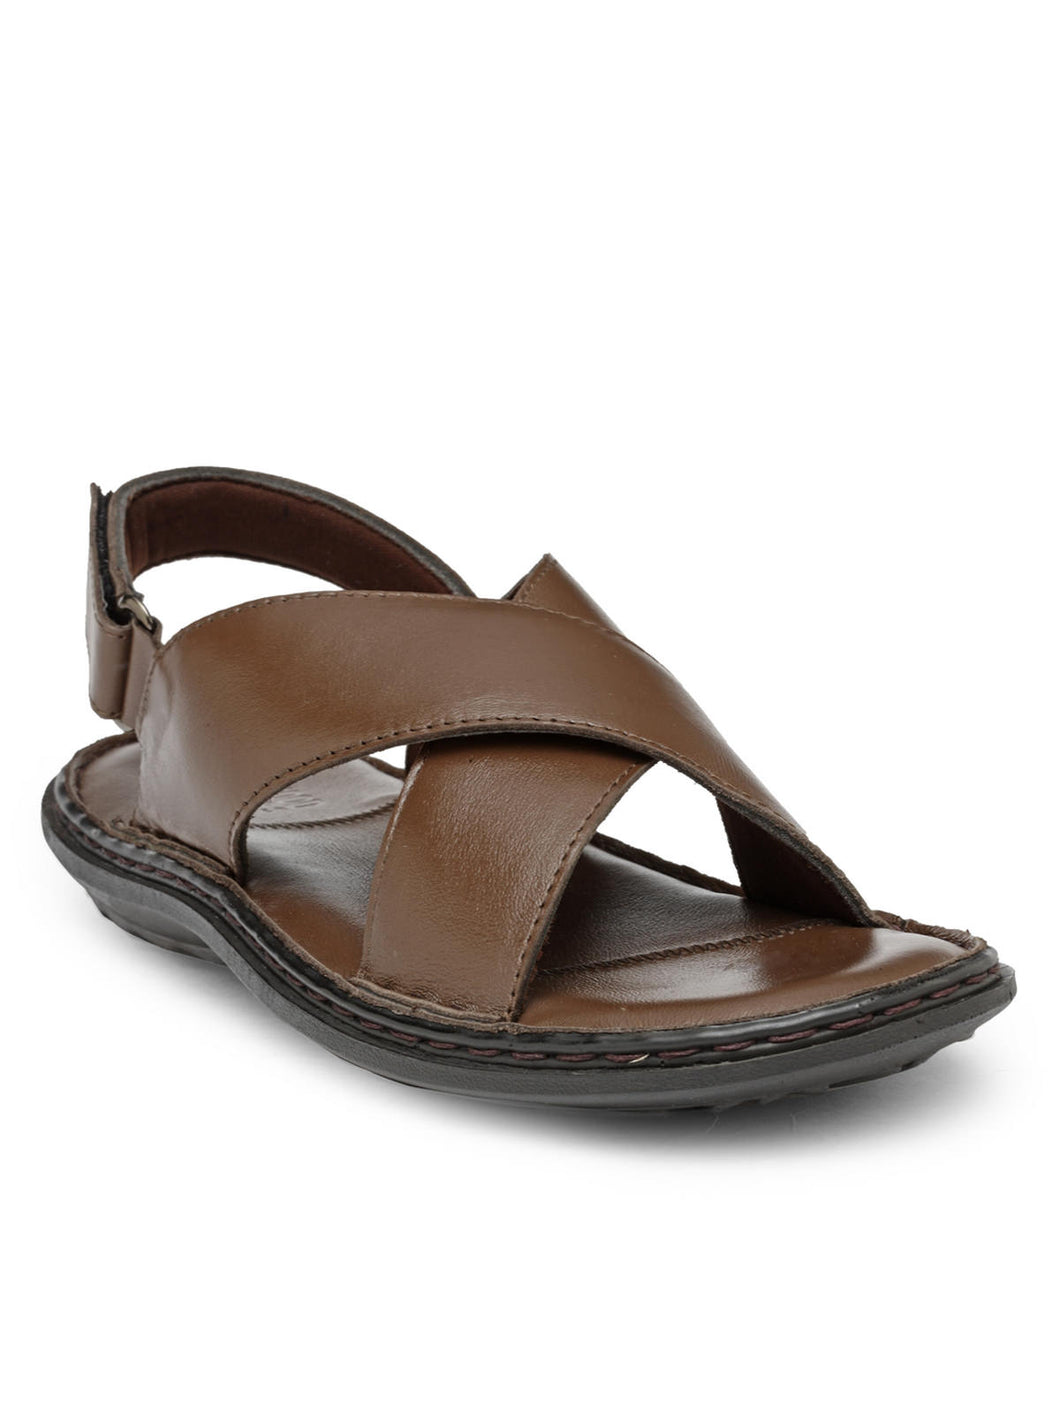 Teakwood Brown Daily Wear Sandals